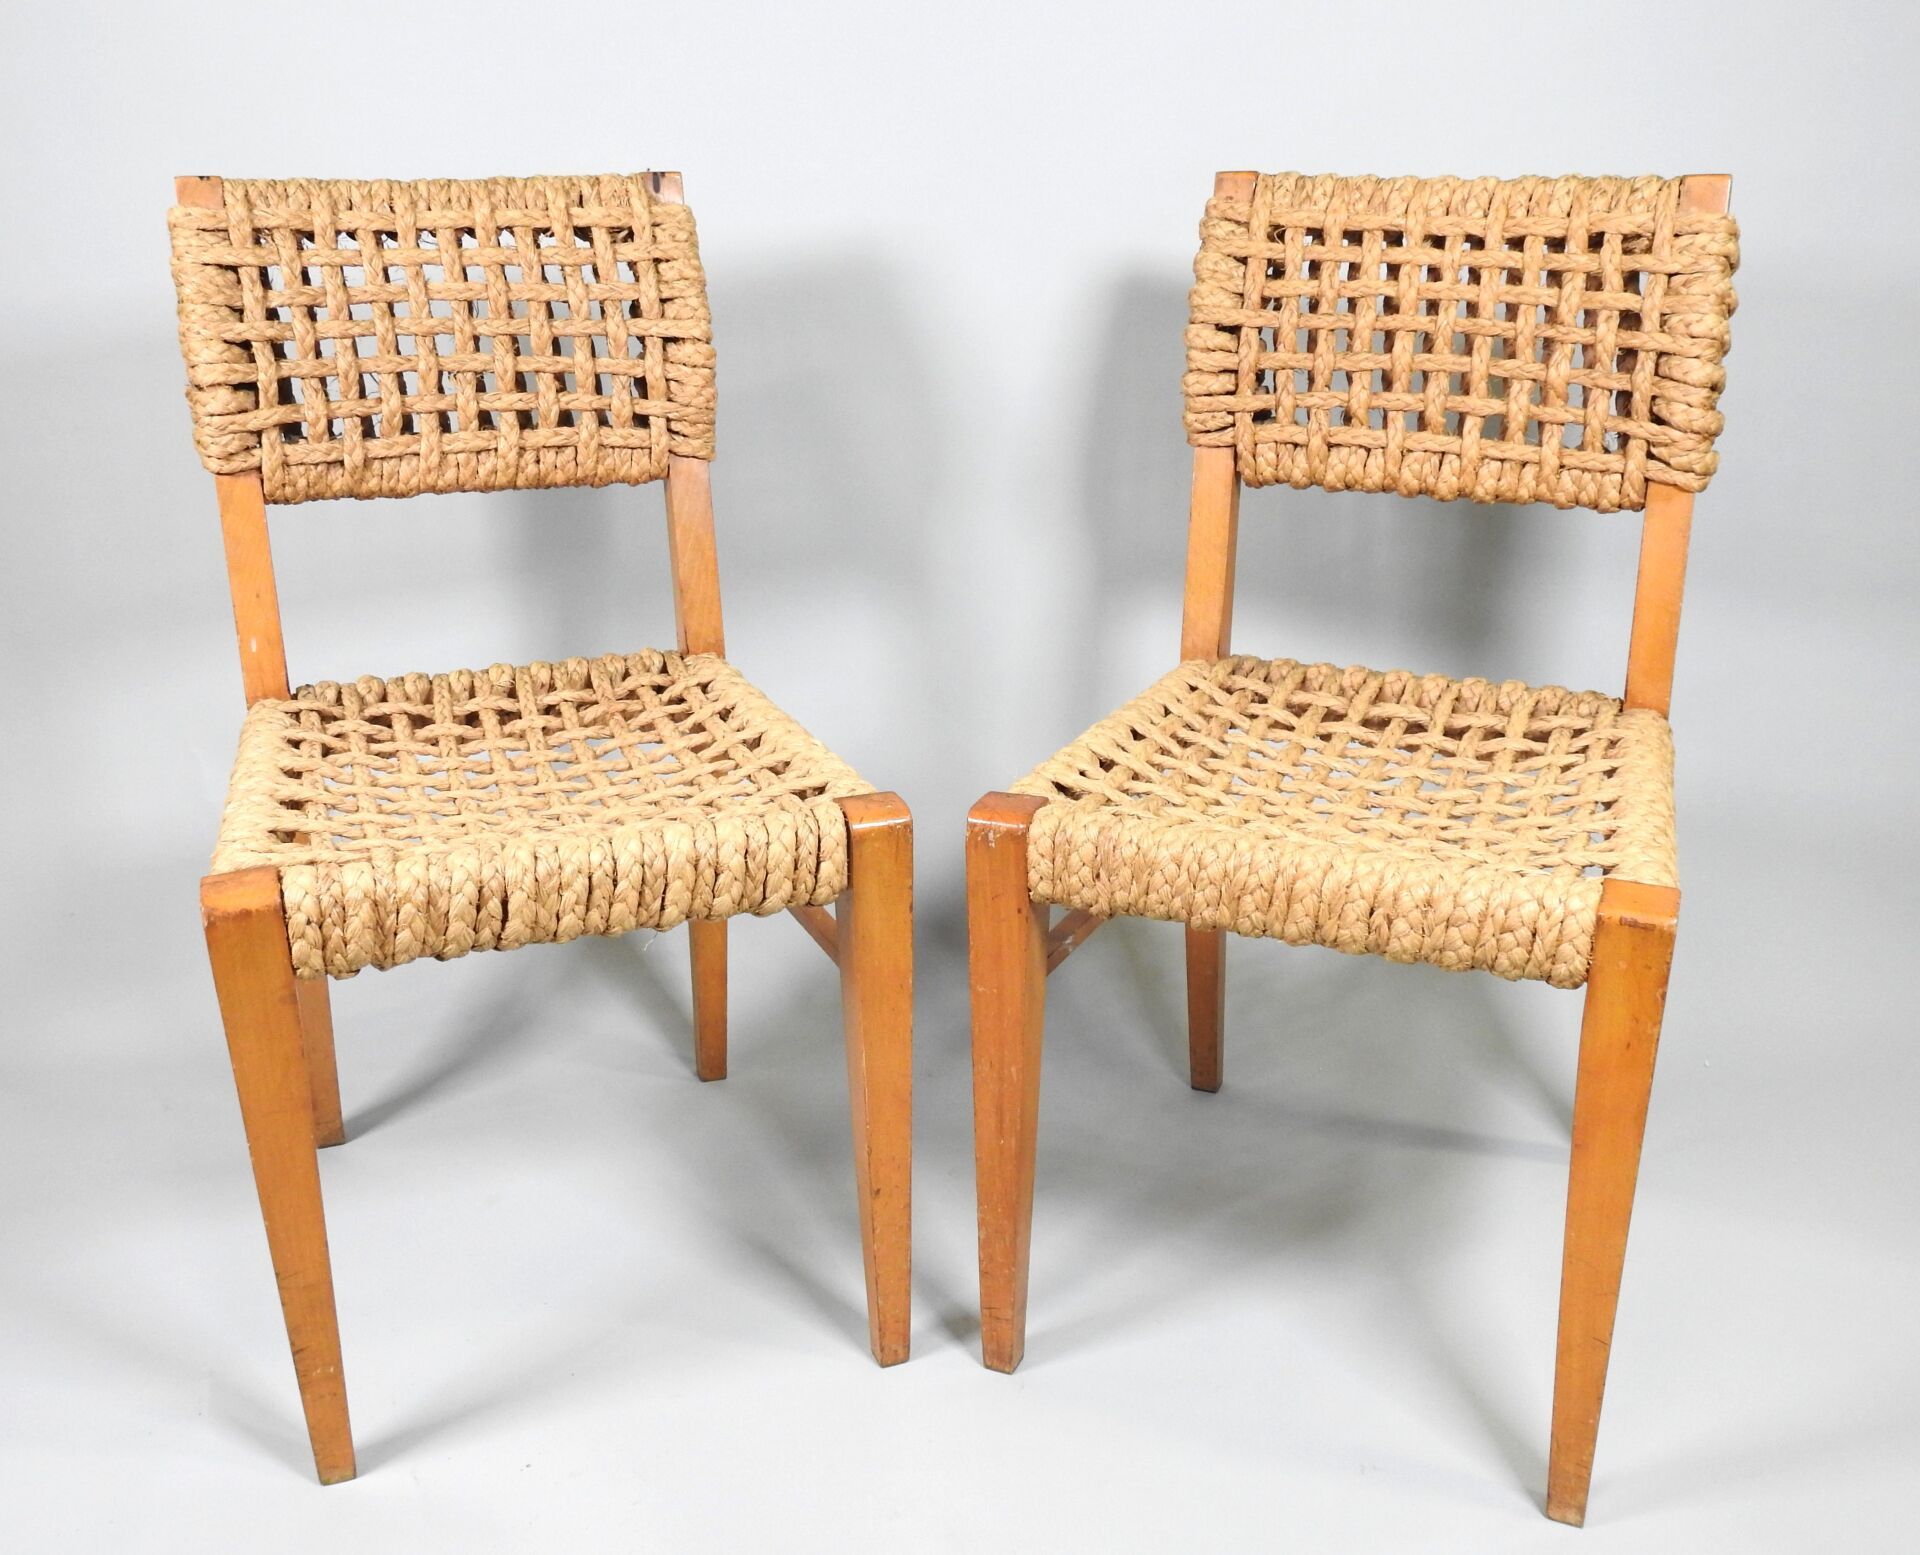 Null 阿德里安-奥杜克斯和弗里达-米内（20 世纪 20 年代）。
一对榉木椅子，麻编织椅座和椅背，鞘状椅腿。
约 1970 年。
84 x 44.5 x &hellip;